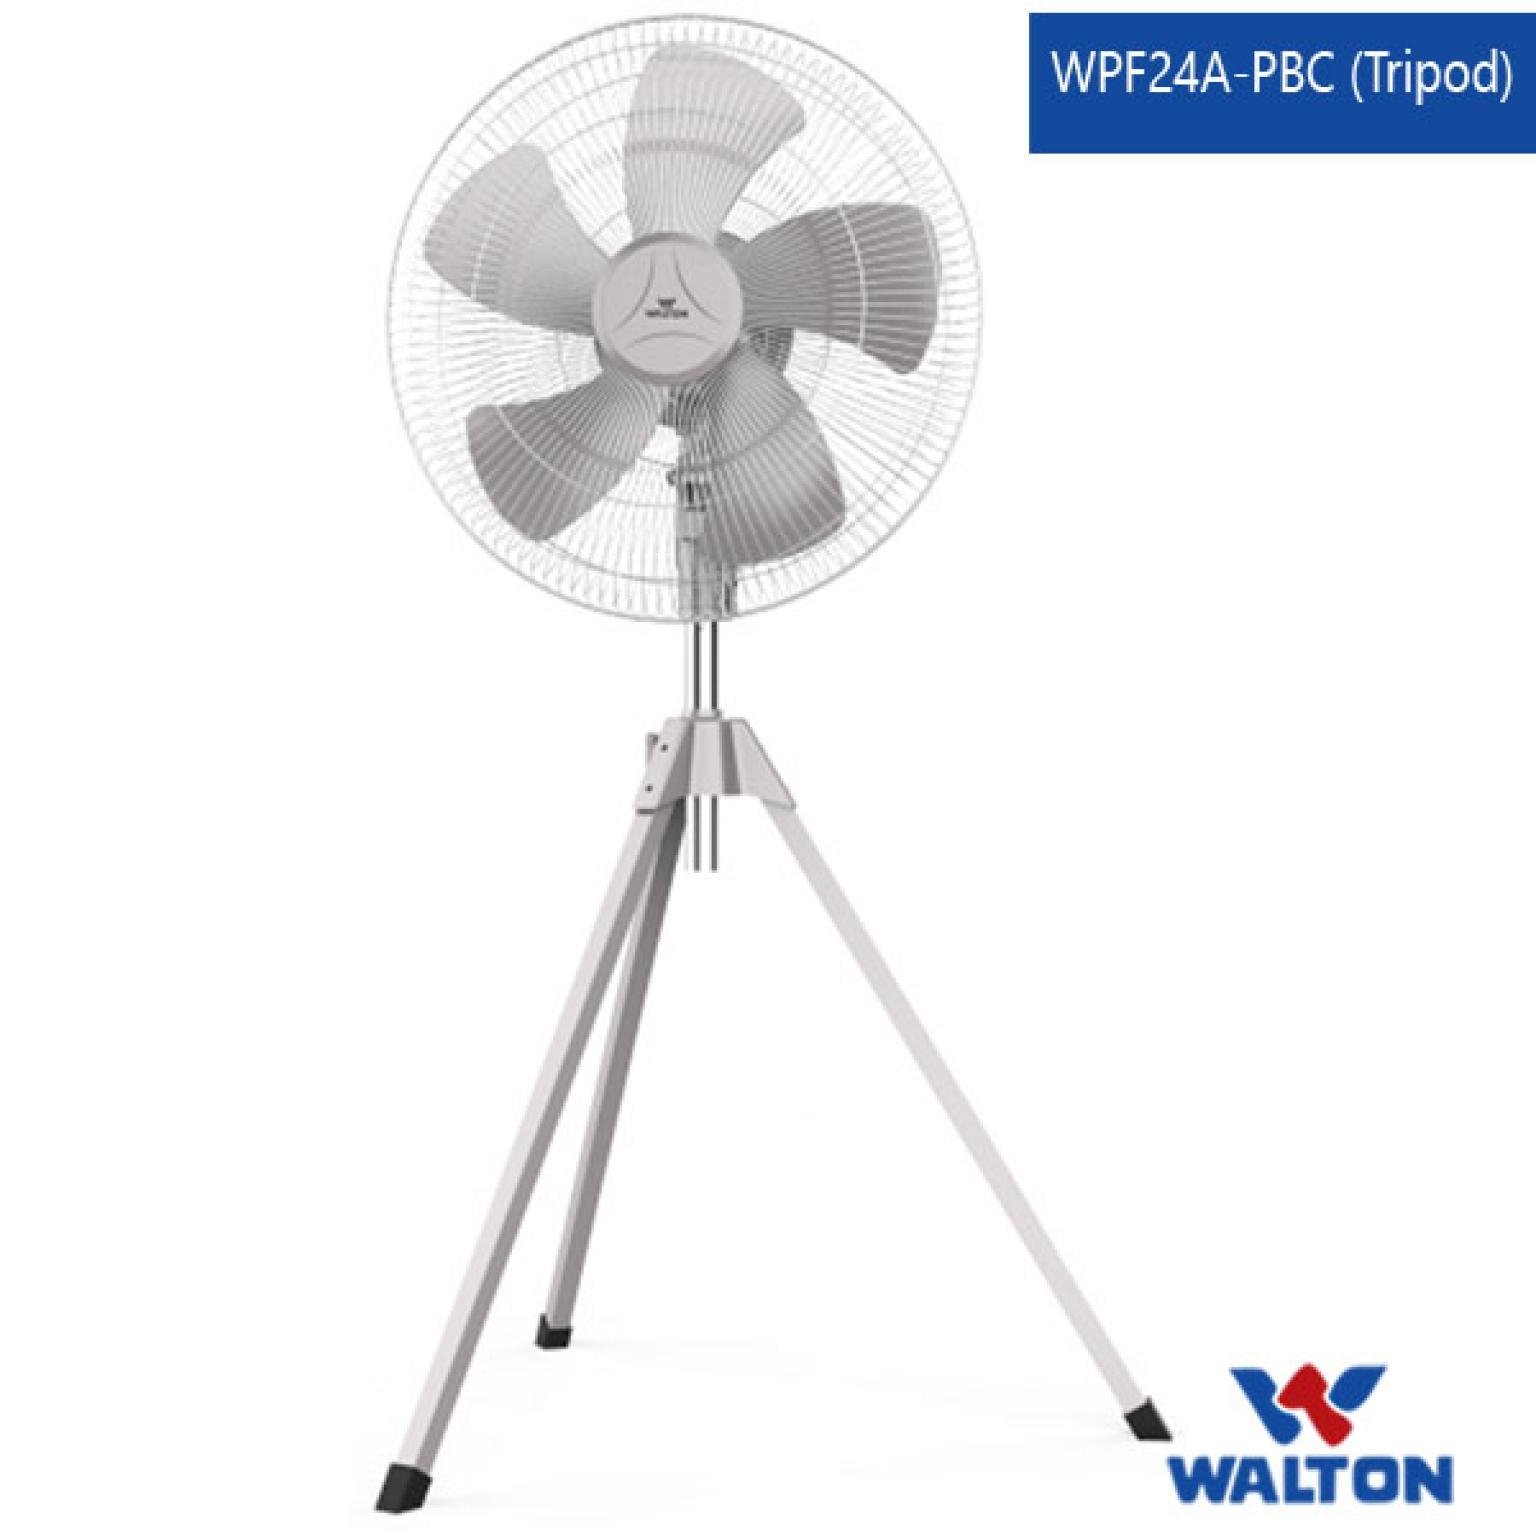 Pedestal Fan WPF24A-PBC (Tripod)